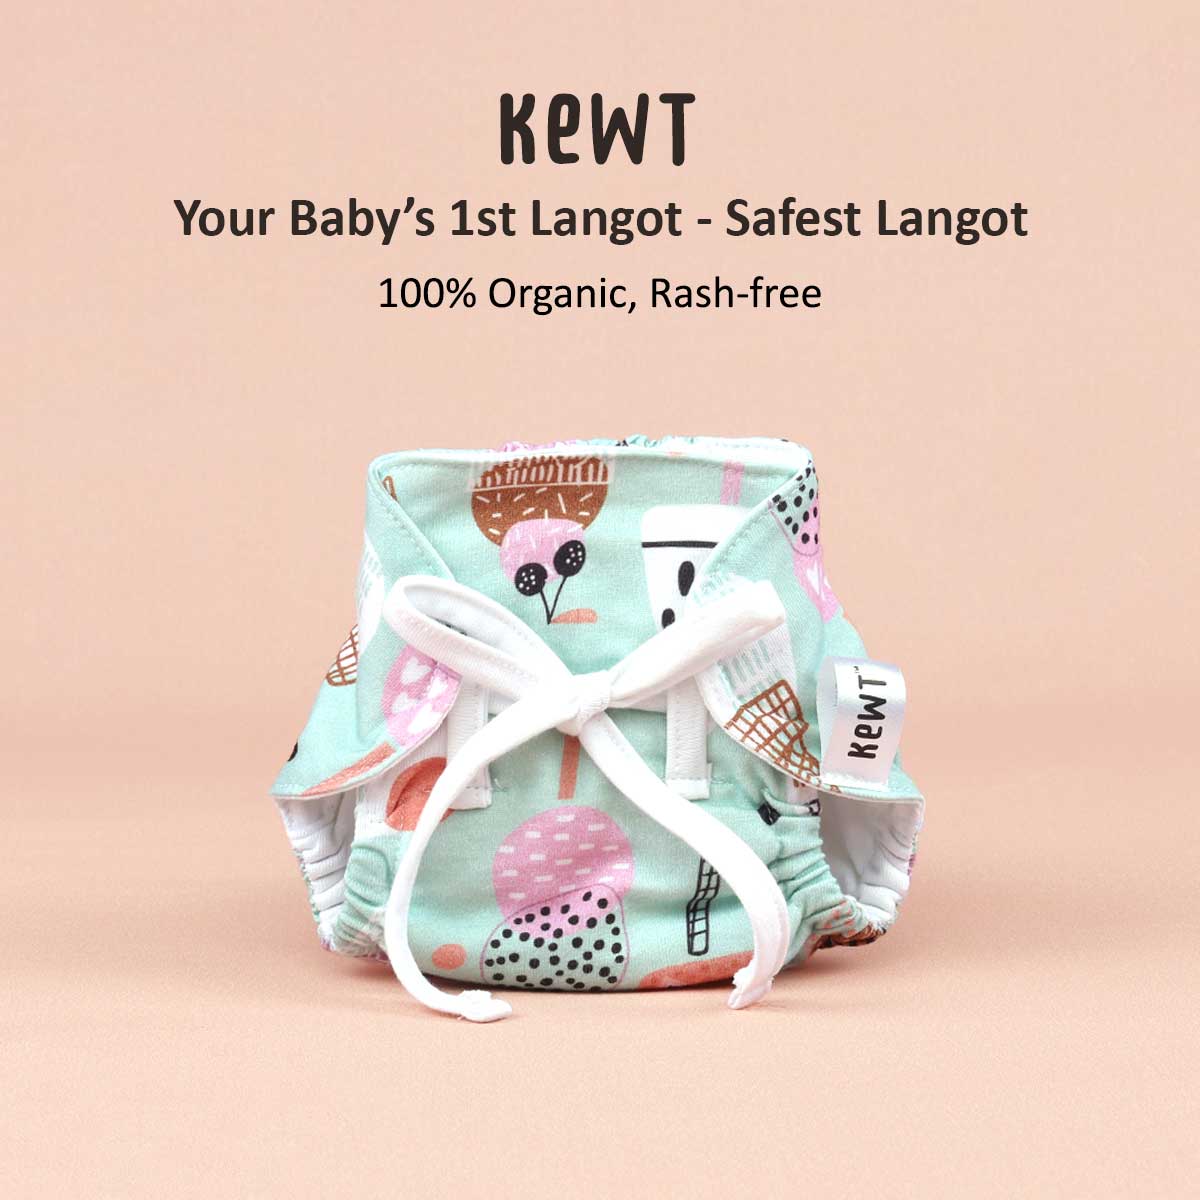 Kewt Langot - The Safest Langot for Newborn Babies